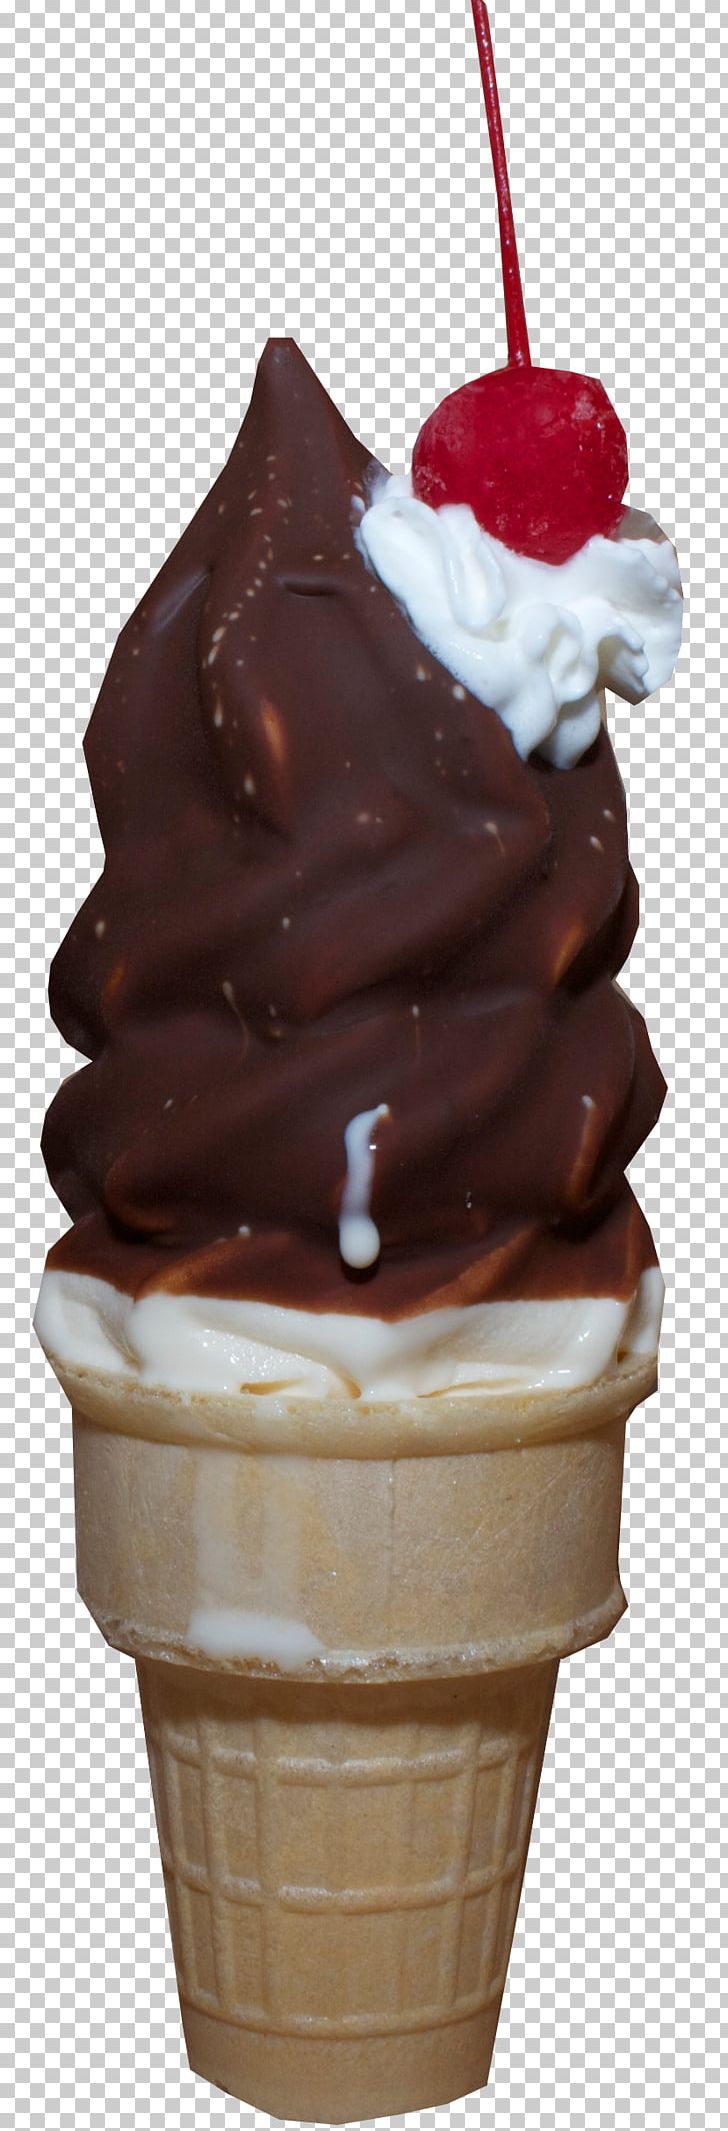 Sundae Chocolate Ice Cream Ice Cream Cones Snow Cone PNG, Clipart, Chocolate, Chocolate Ice Cream, Chocolate Pudding, Chocolate Spread, Chocolate Syrup Free PNG Download